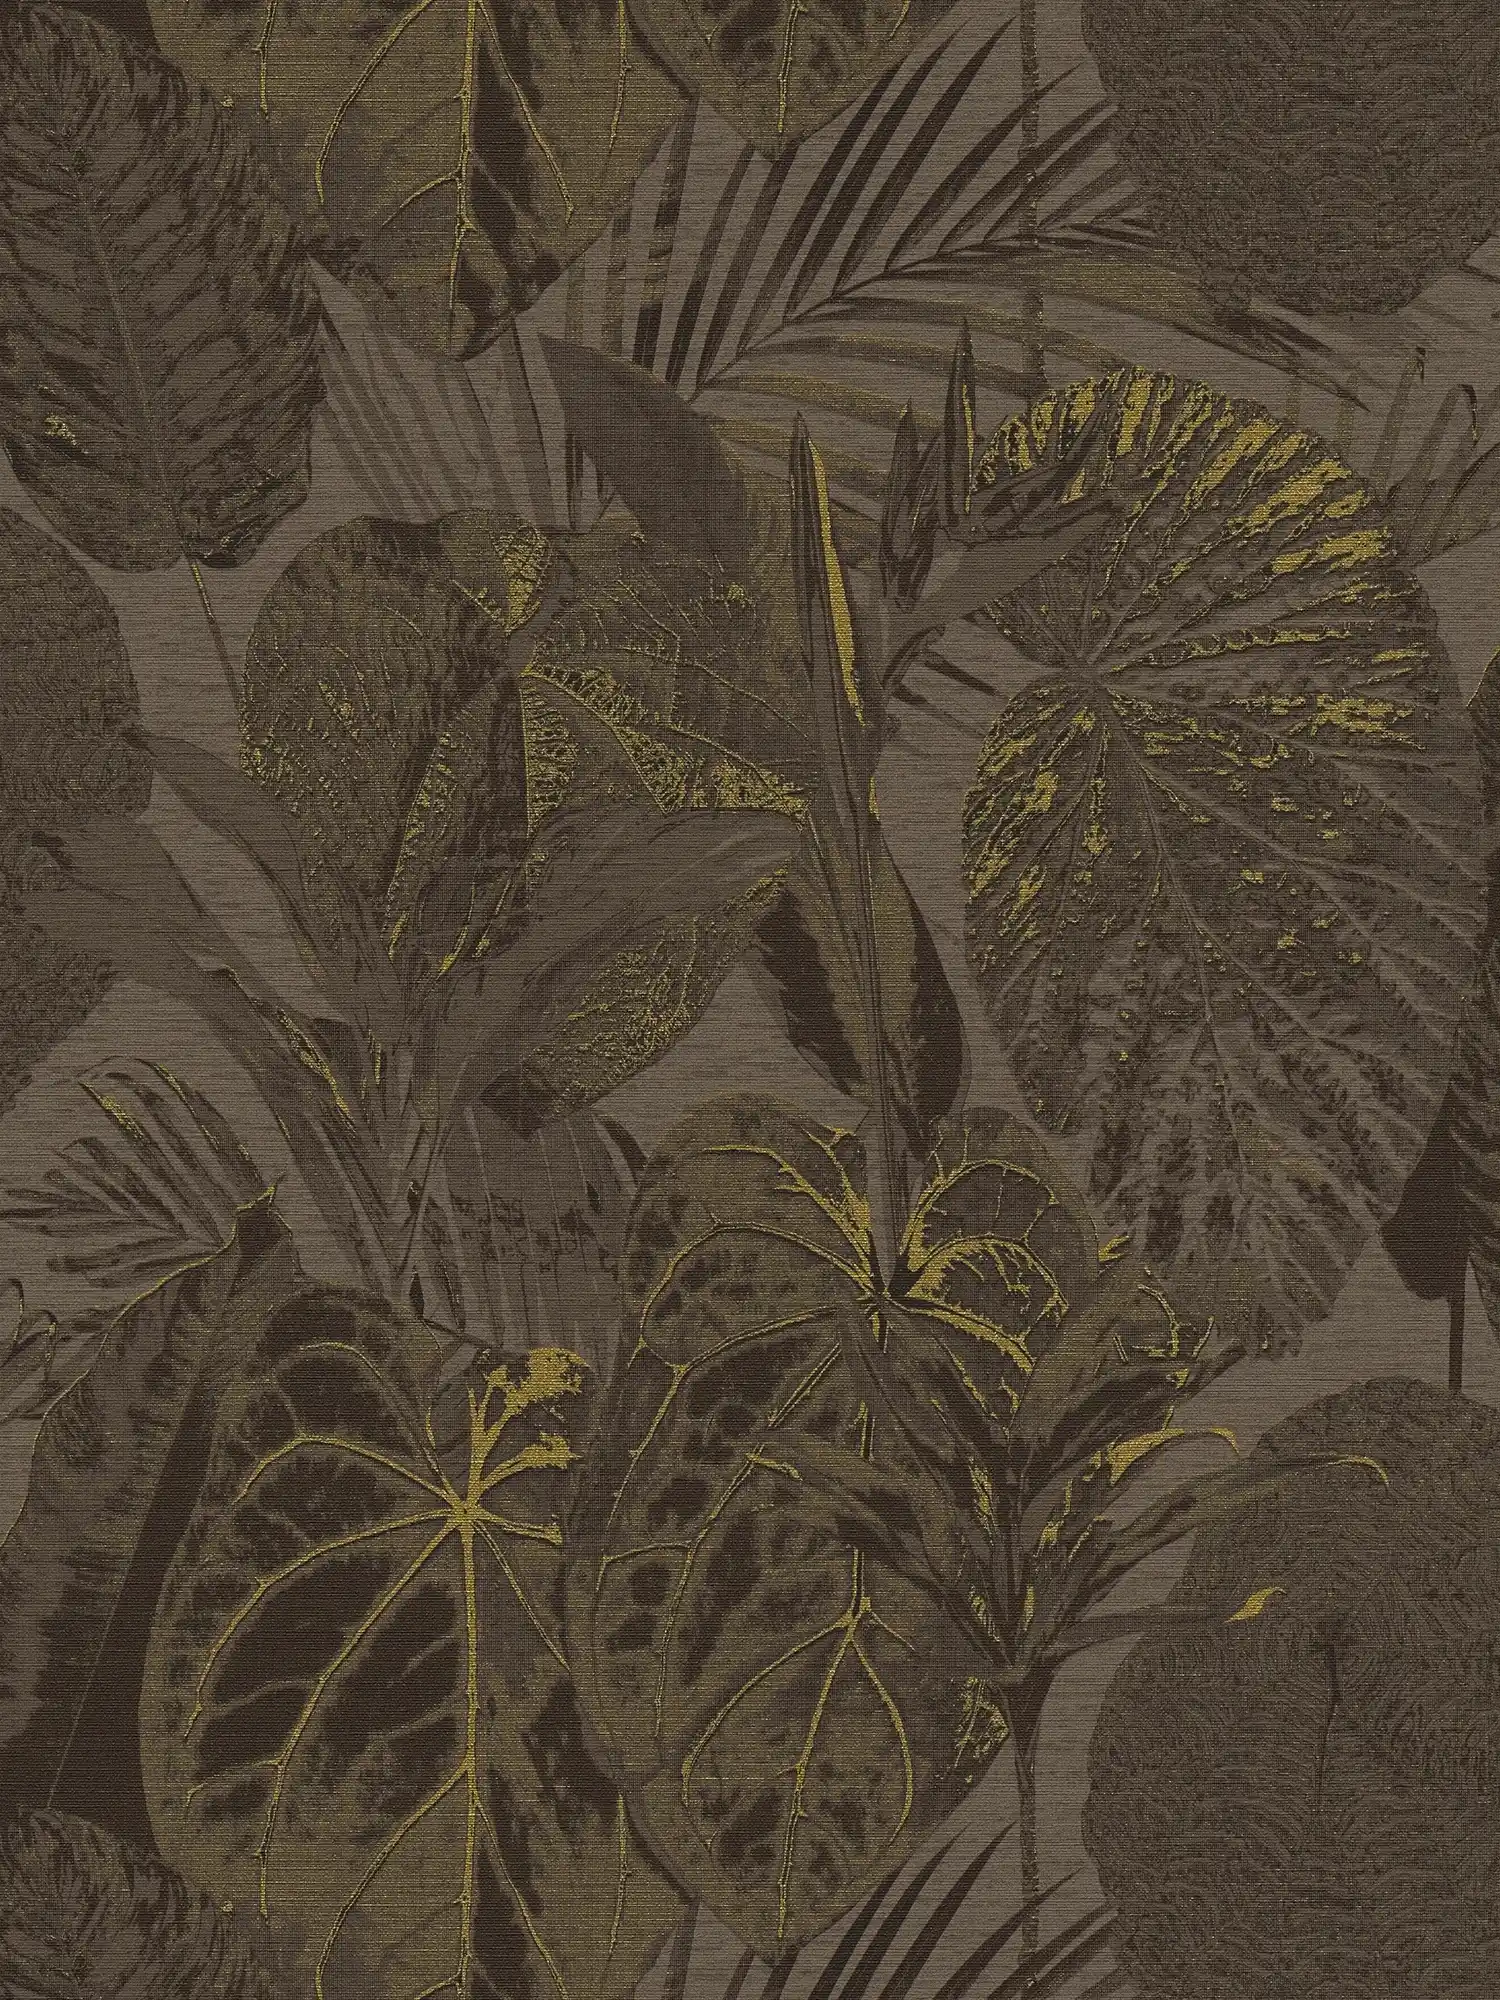 Vliesbehang met junglepatroon licht gestructureerd, mat - bruin, zwart, goud
